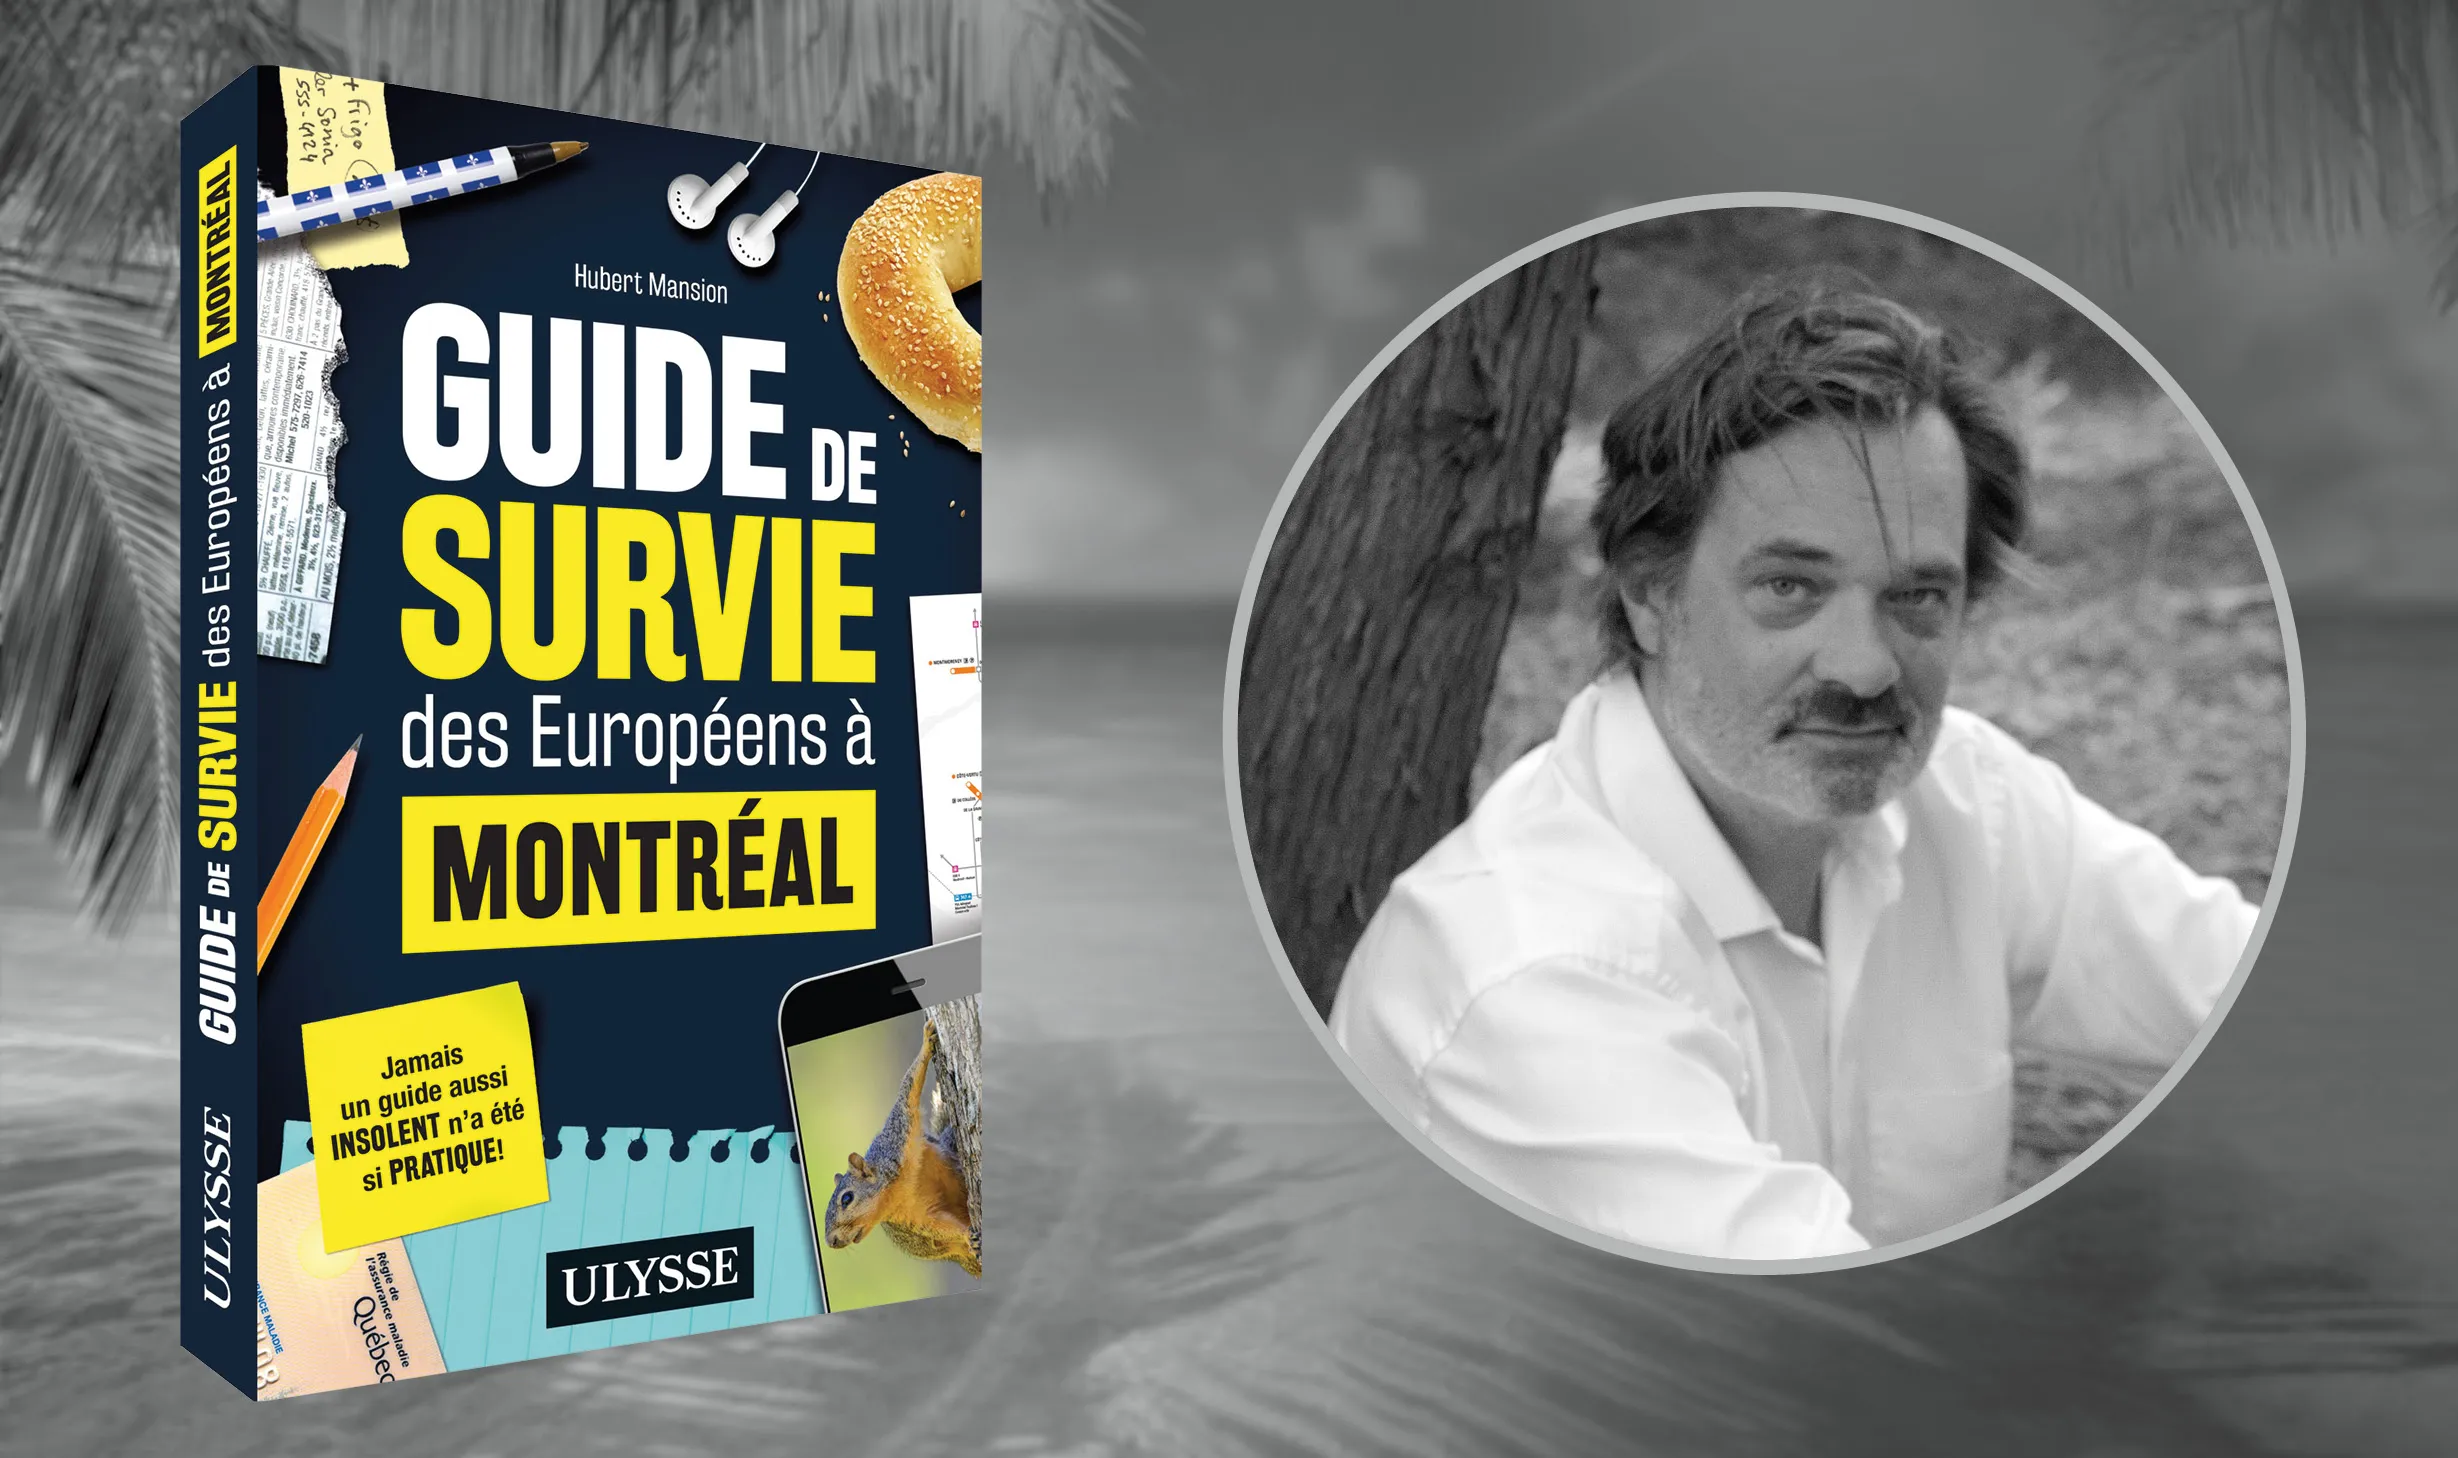 Hubert Mansion et son guide de survie des Européens à Montréal